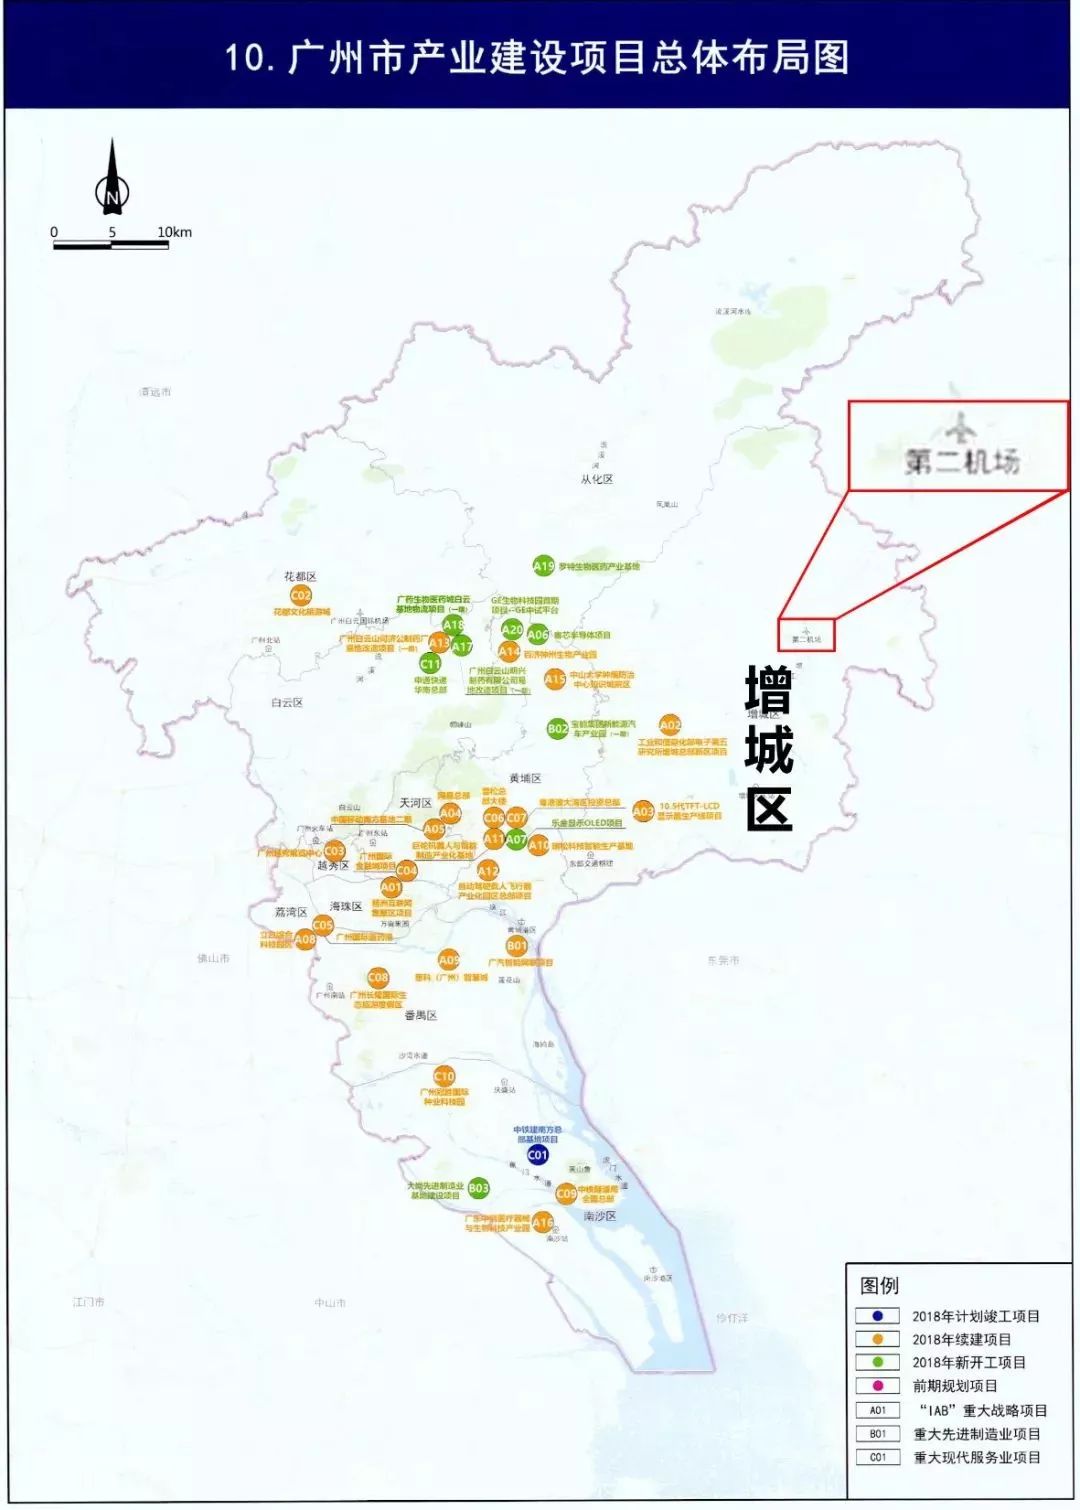 《广州市城市总体规划(2017-2035年)》草案内容